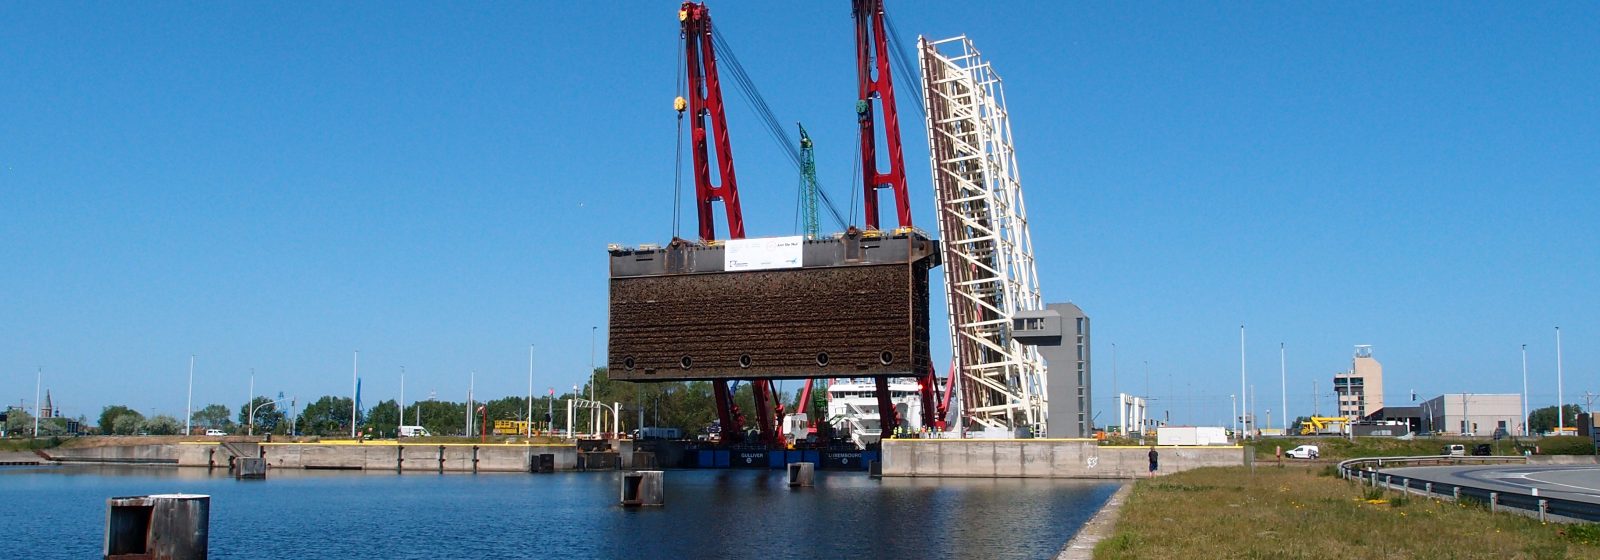 De meest landwaartse deur van de Pierre Vandammesluis in Zeebrugge wordt weggenomen voor renovatie